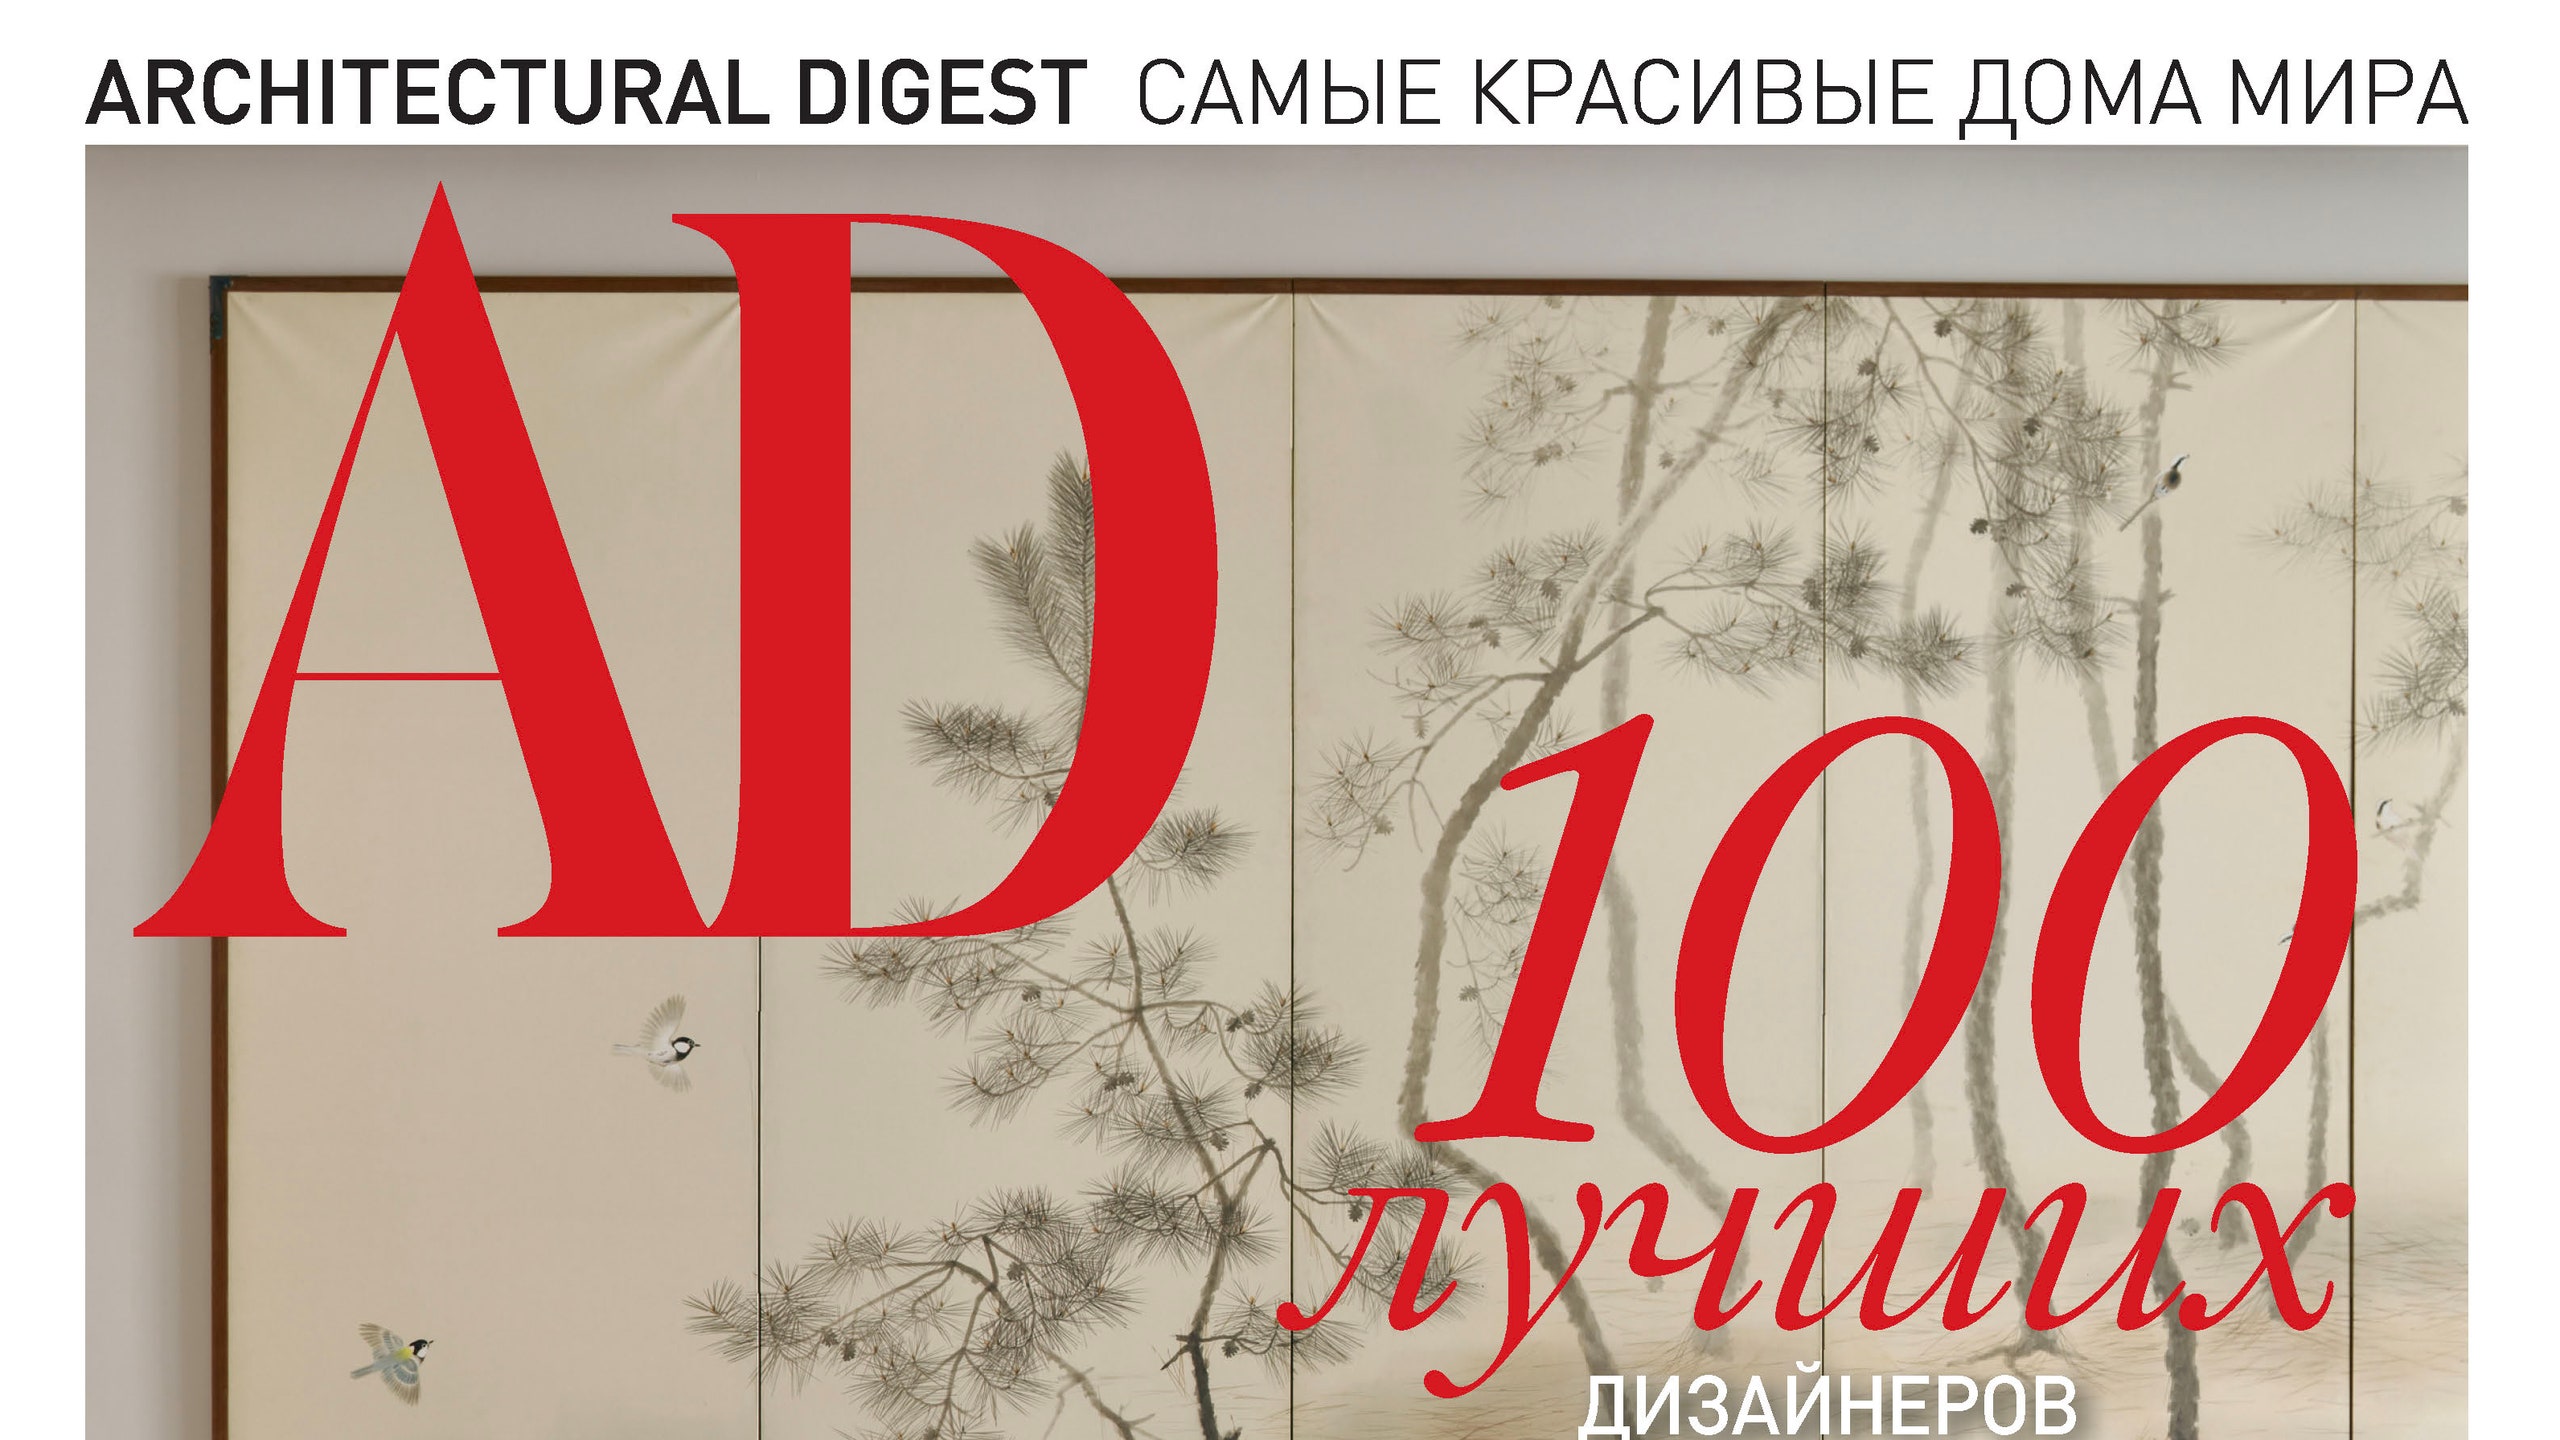 3 веские причины купить специальный выпуск AD “100 лучших дизайнеров и архитекторов России”